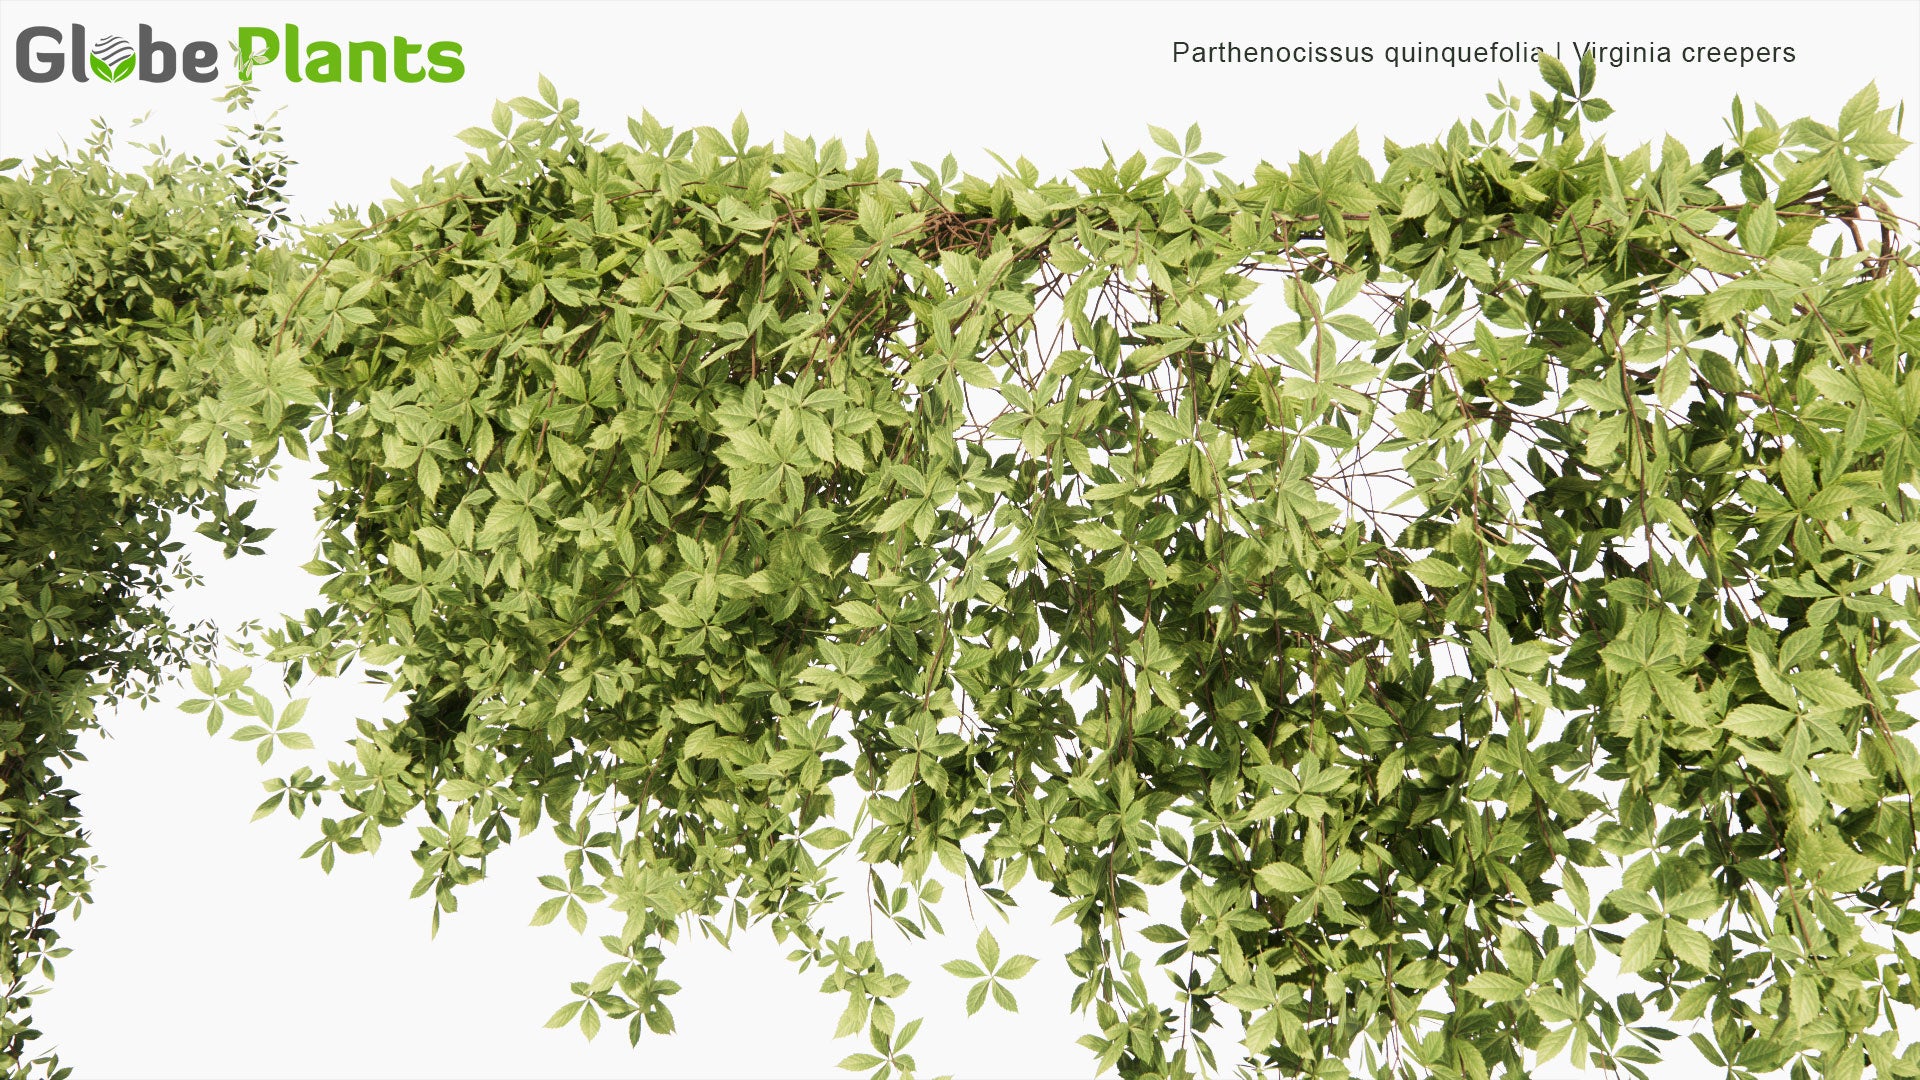 High Poly  Parthenocissus Quinquefolia (Virginia Creepers) 3D Model